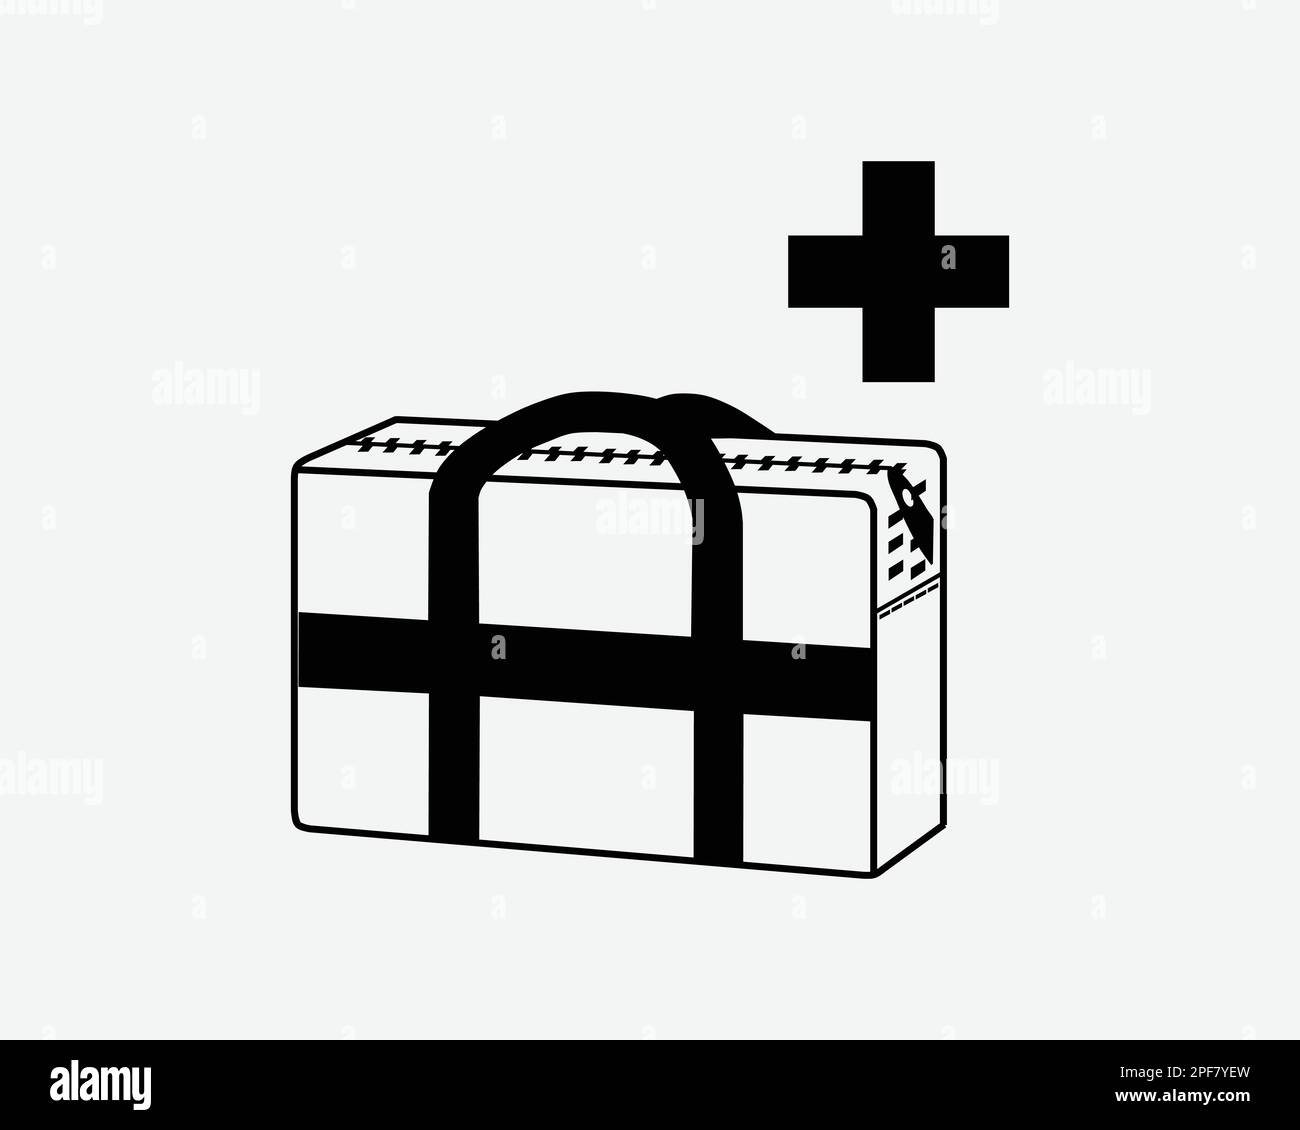 Sac médical matériel médical médical de transport de premiers soins Noir blanc Silhouette symbole icône graphique Clipart Illustration Illustration pictogramme vecteur Illustration de Vecteur